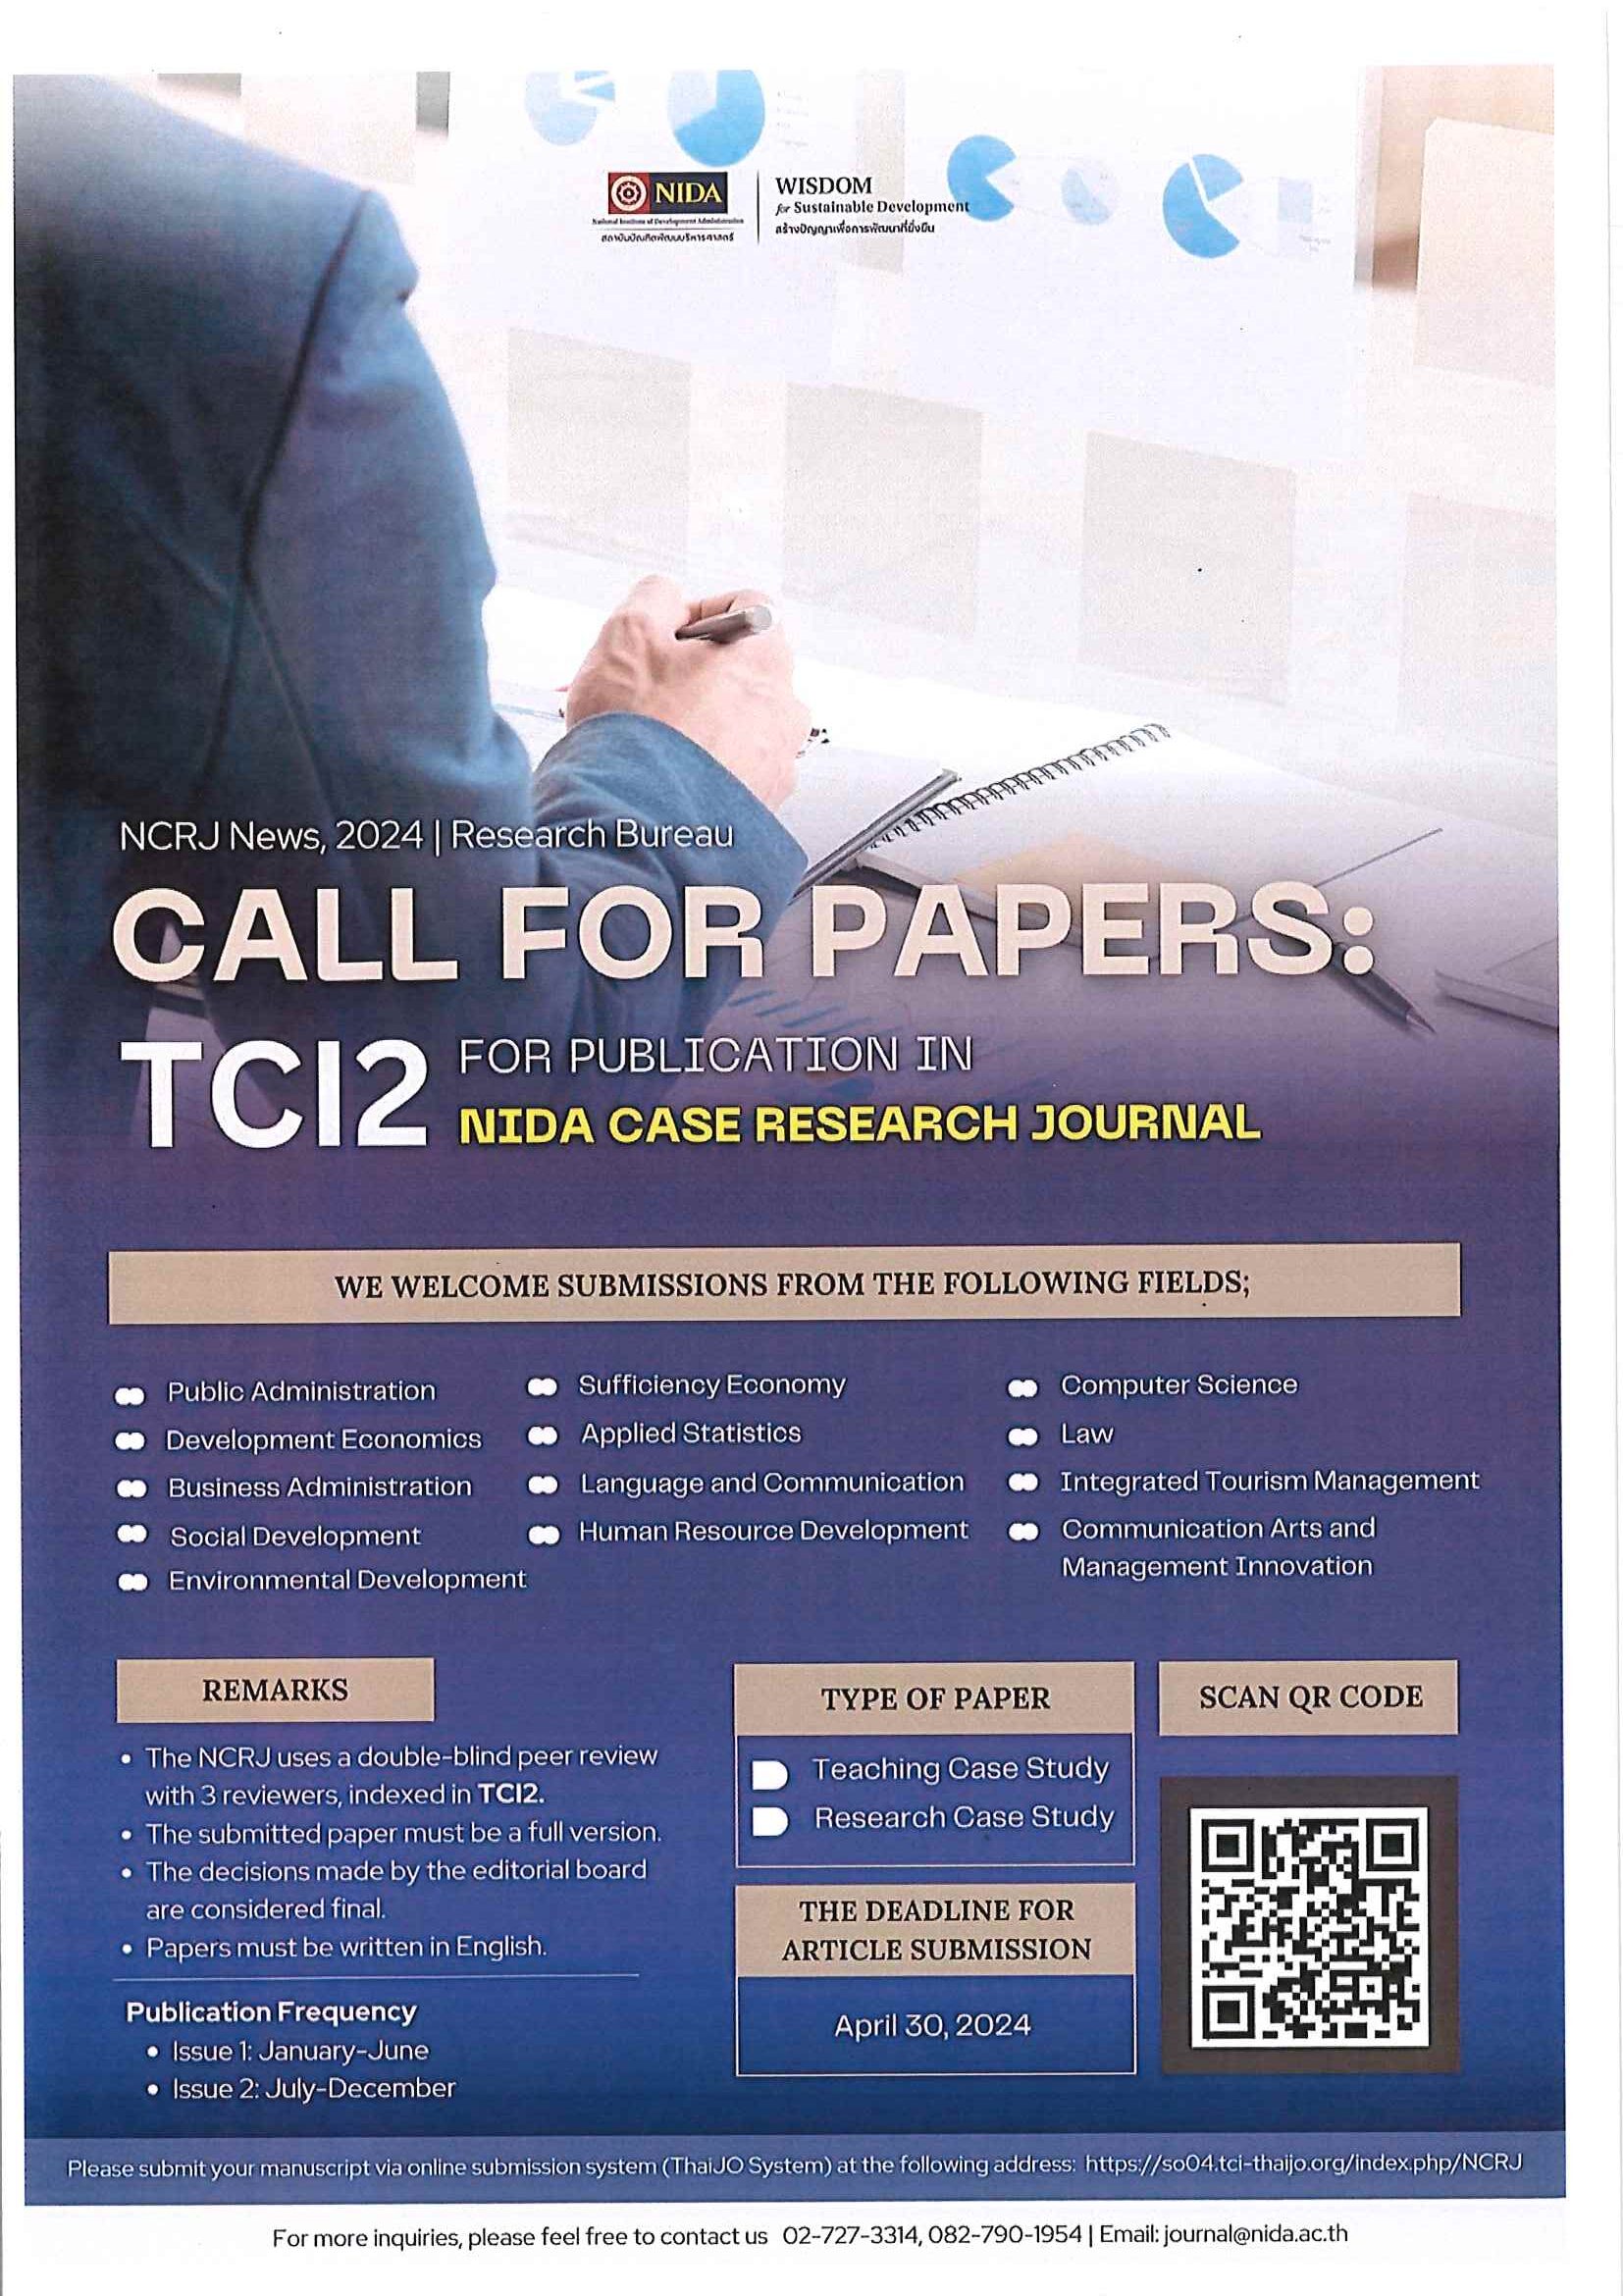 ประชาสัมพันธ์เชิญชวนส่งผลงานประเภทกรณีศึกษาเพื่อเผยแพร่ในวารสาร NIDA Case Research Journal (ฐาน TCI 2)